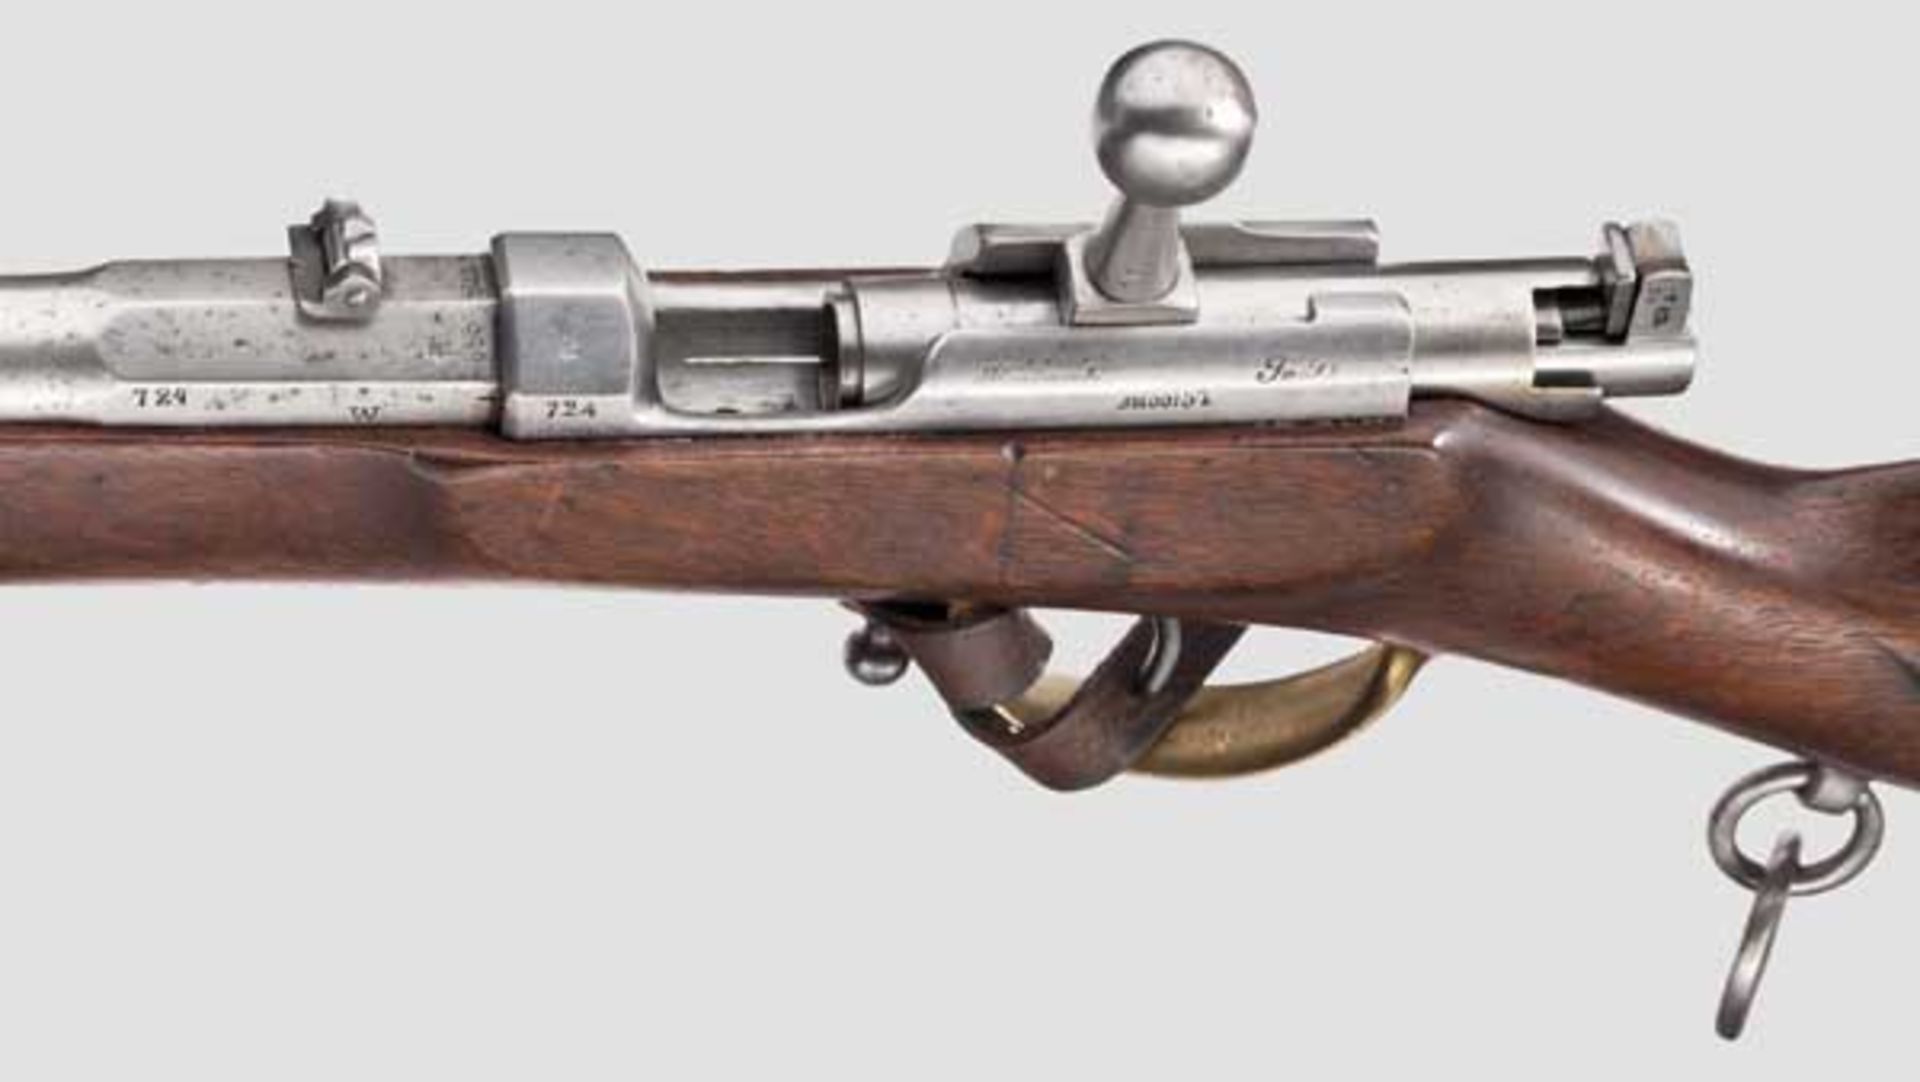 Zündnadelkarabiner M 1857 Kaliber 15,4 mm, Seriennummer 724, nummerngleich inklusive Schrauben. - Bild 3 aus 3